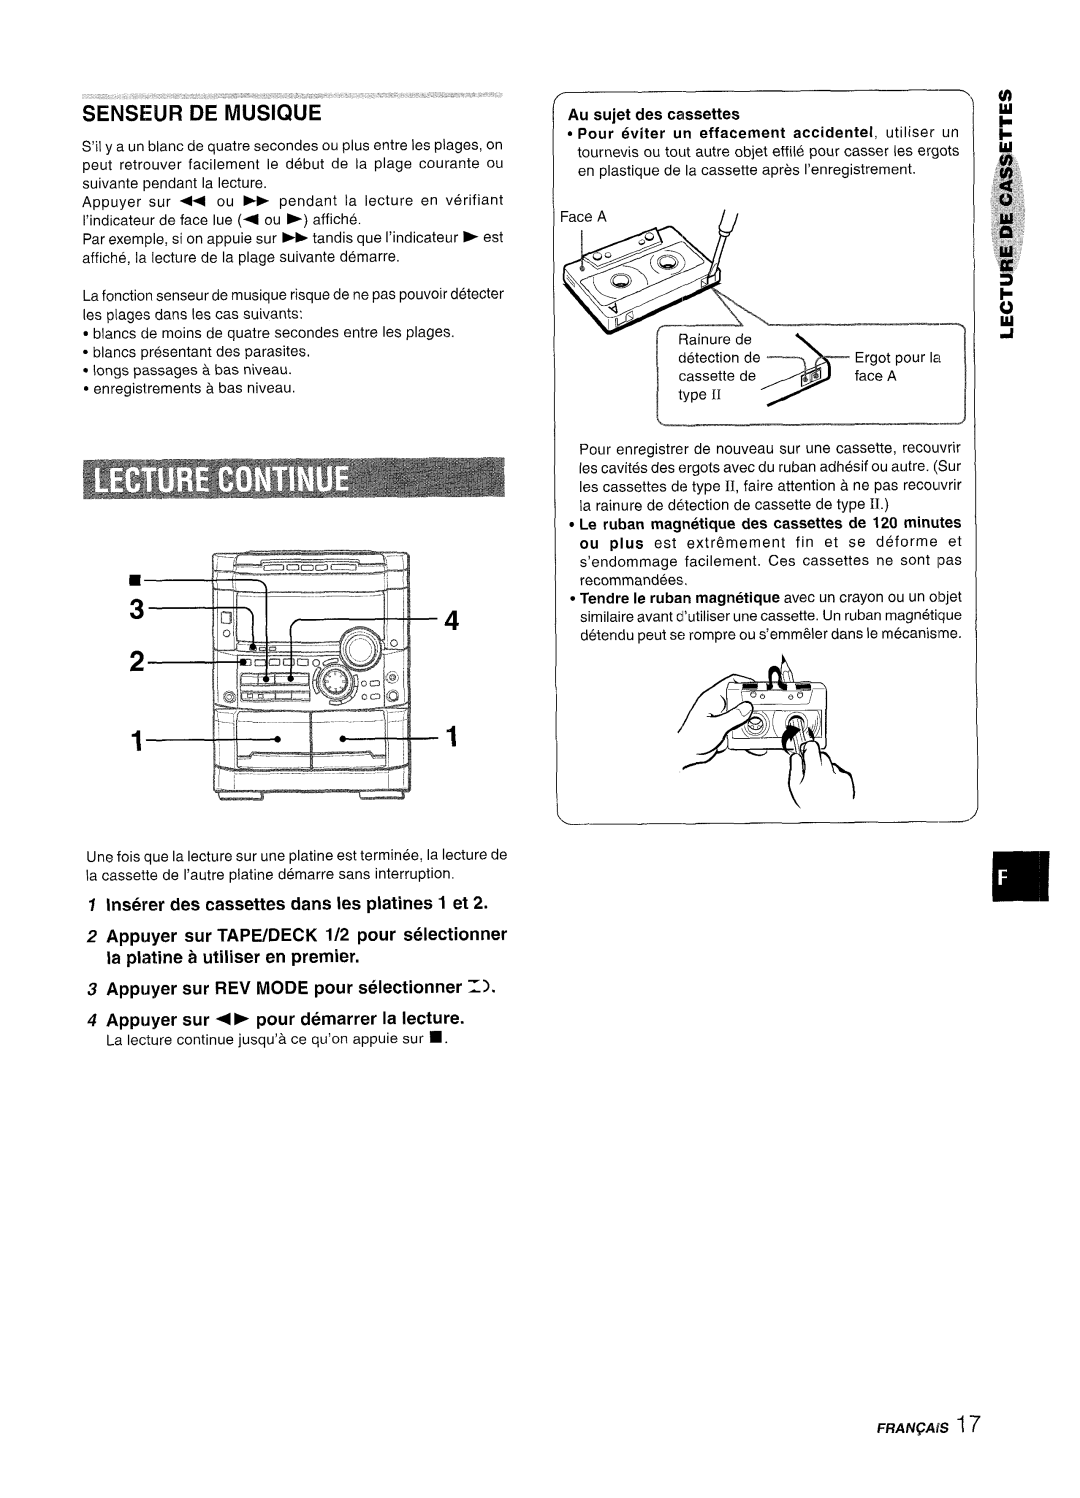 Sony NSX-A777 manual Inset’er des cassettes clans les platines 1 et, Appuyer sur REV MODE pour selectionner Z 